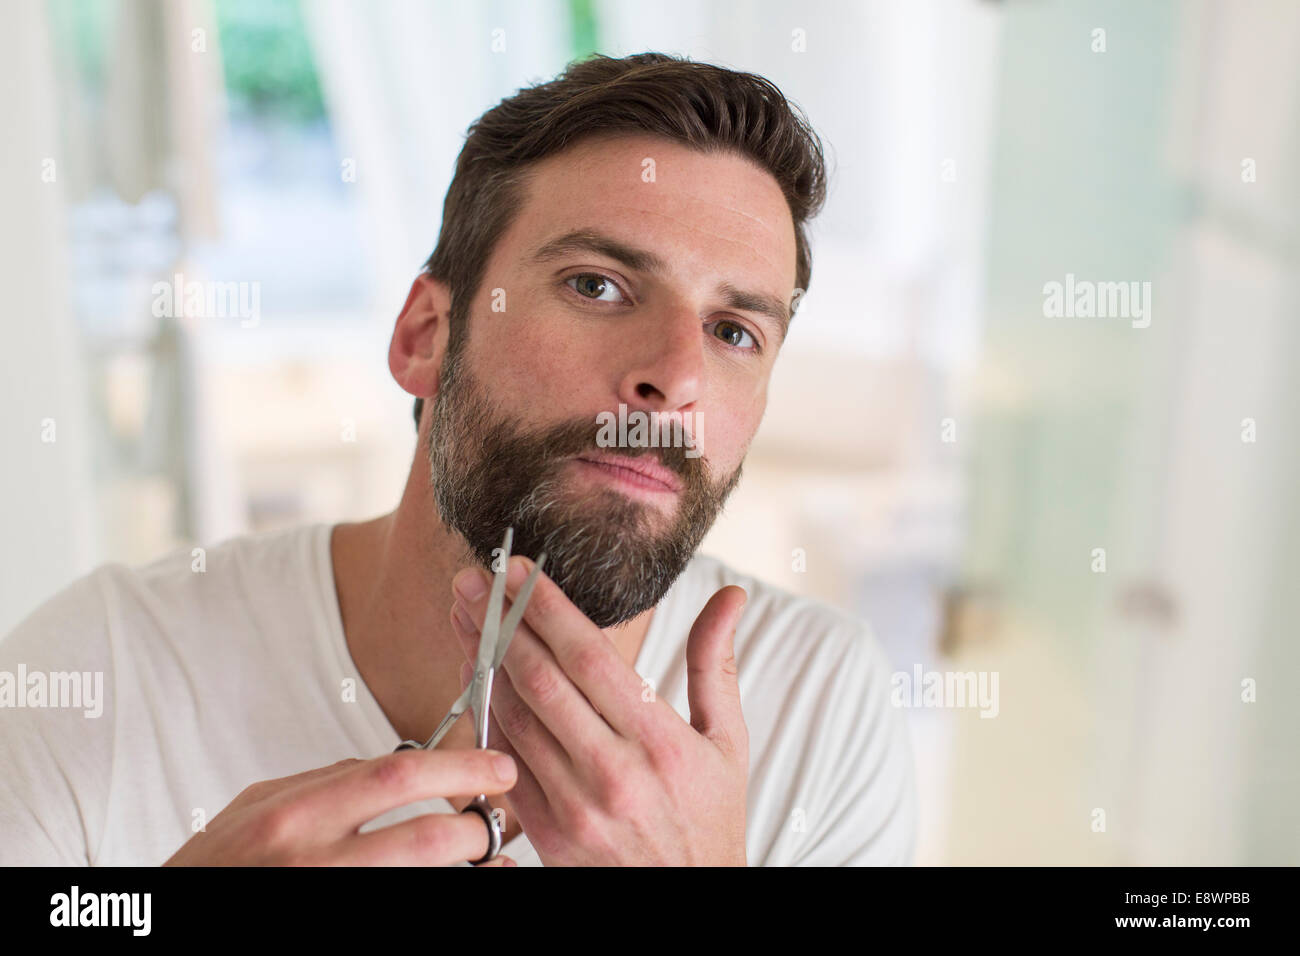 L'homme dans la salle de bains barbe de fraisage Banque D'Images